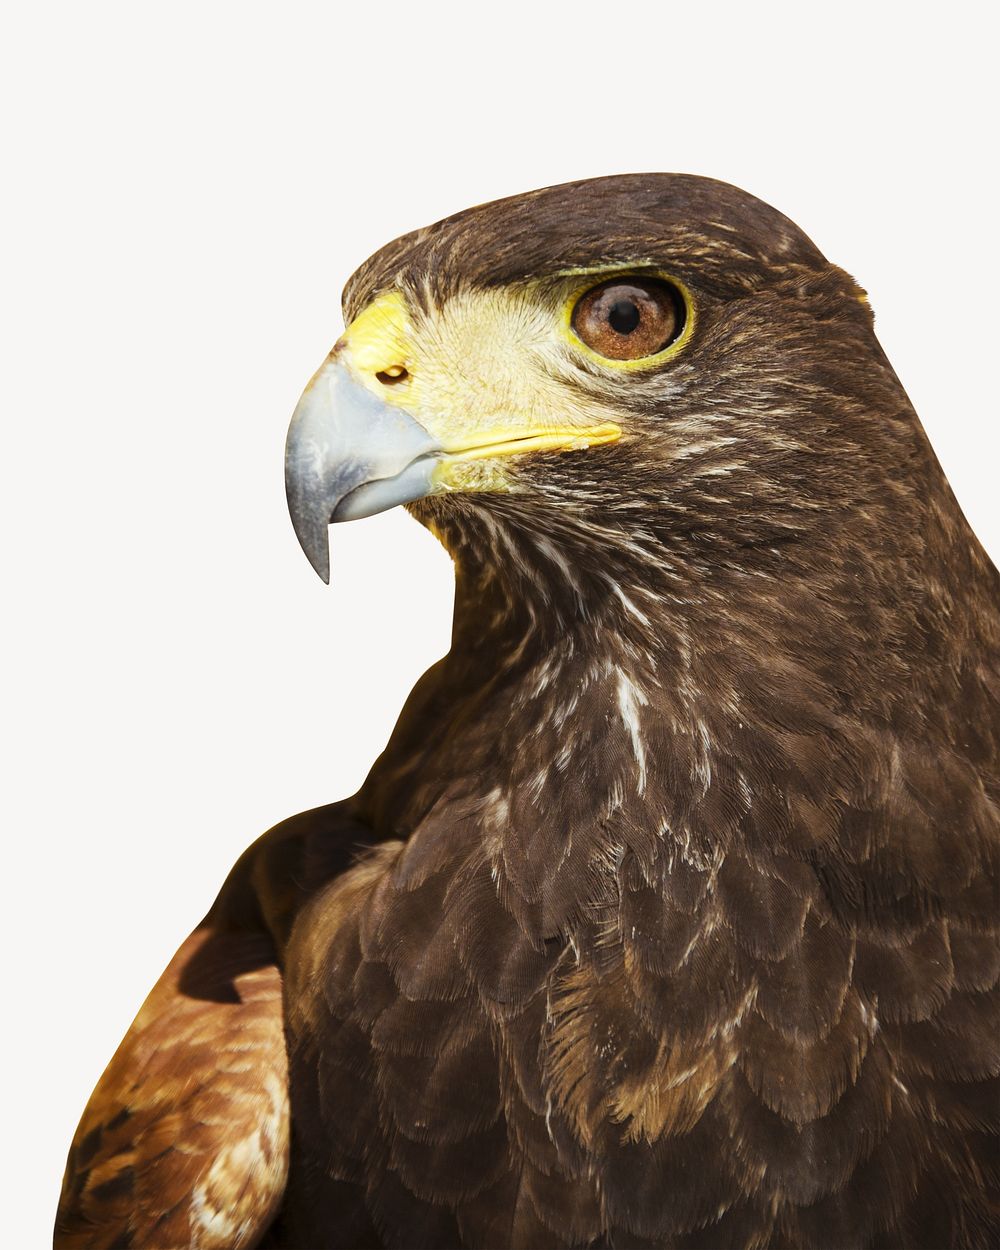 Eagle, bird animal collage element, isolated image